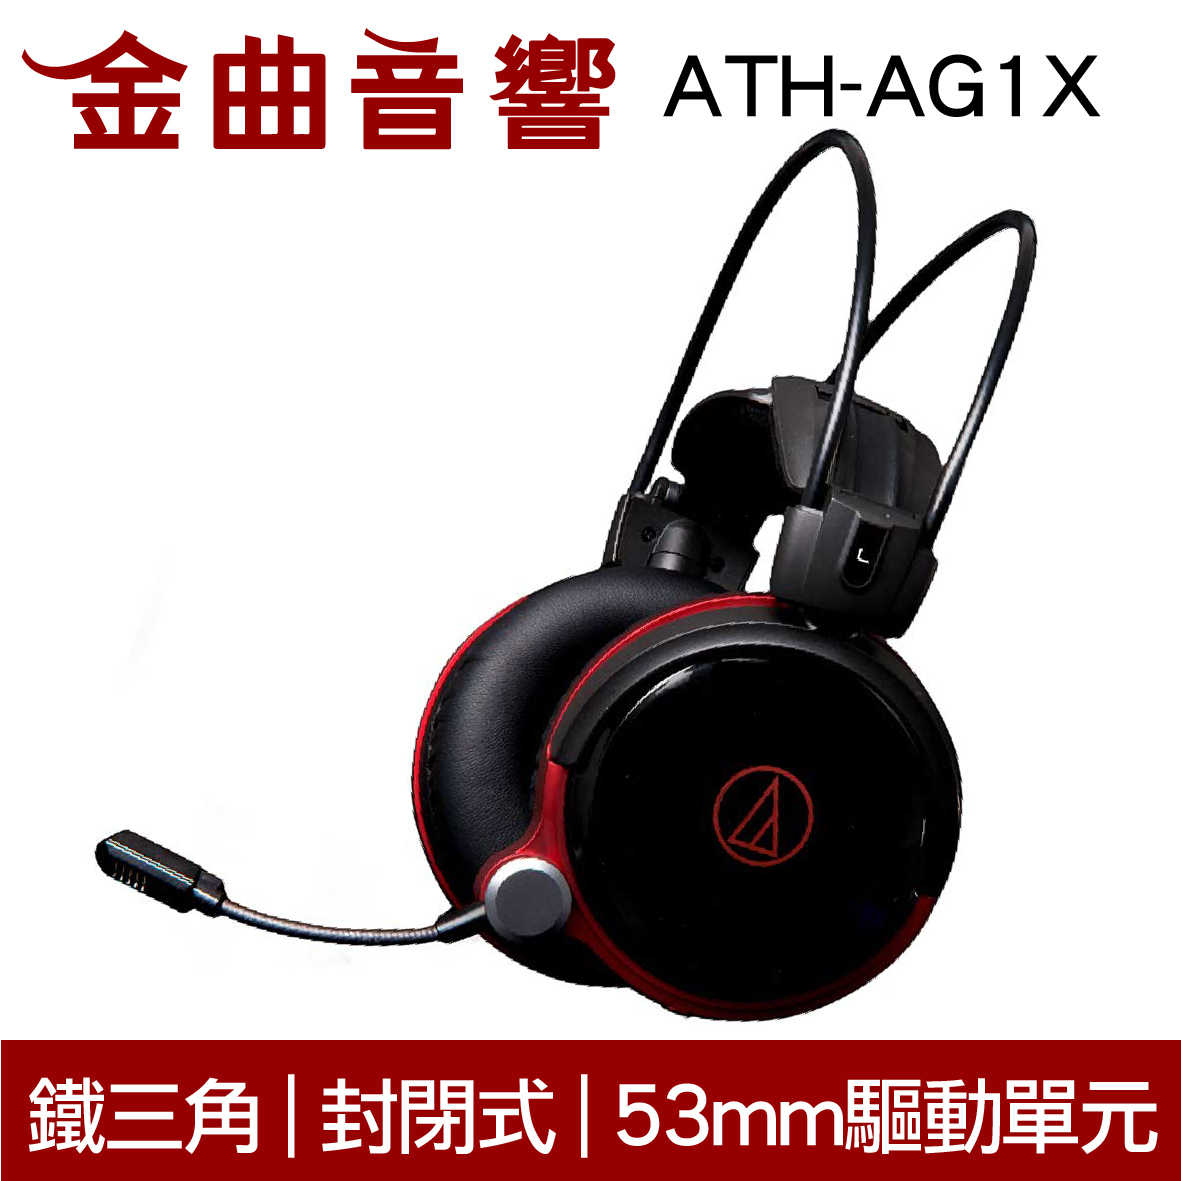 鐵三角 ATH-AG1X 電競耳機 麥克風 封閉式 耳罩式 耳機 | 金曲音響